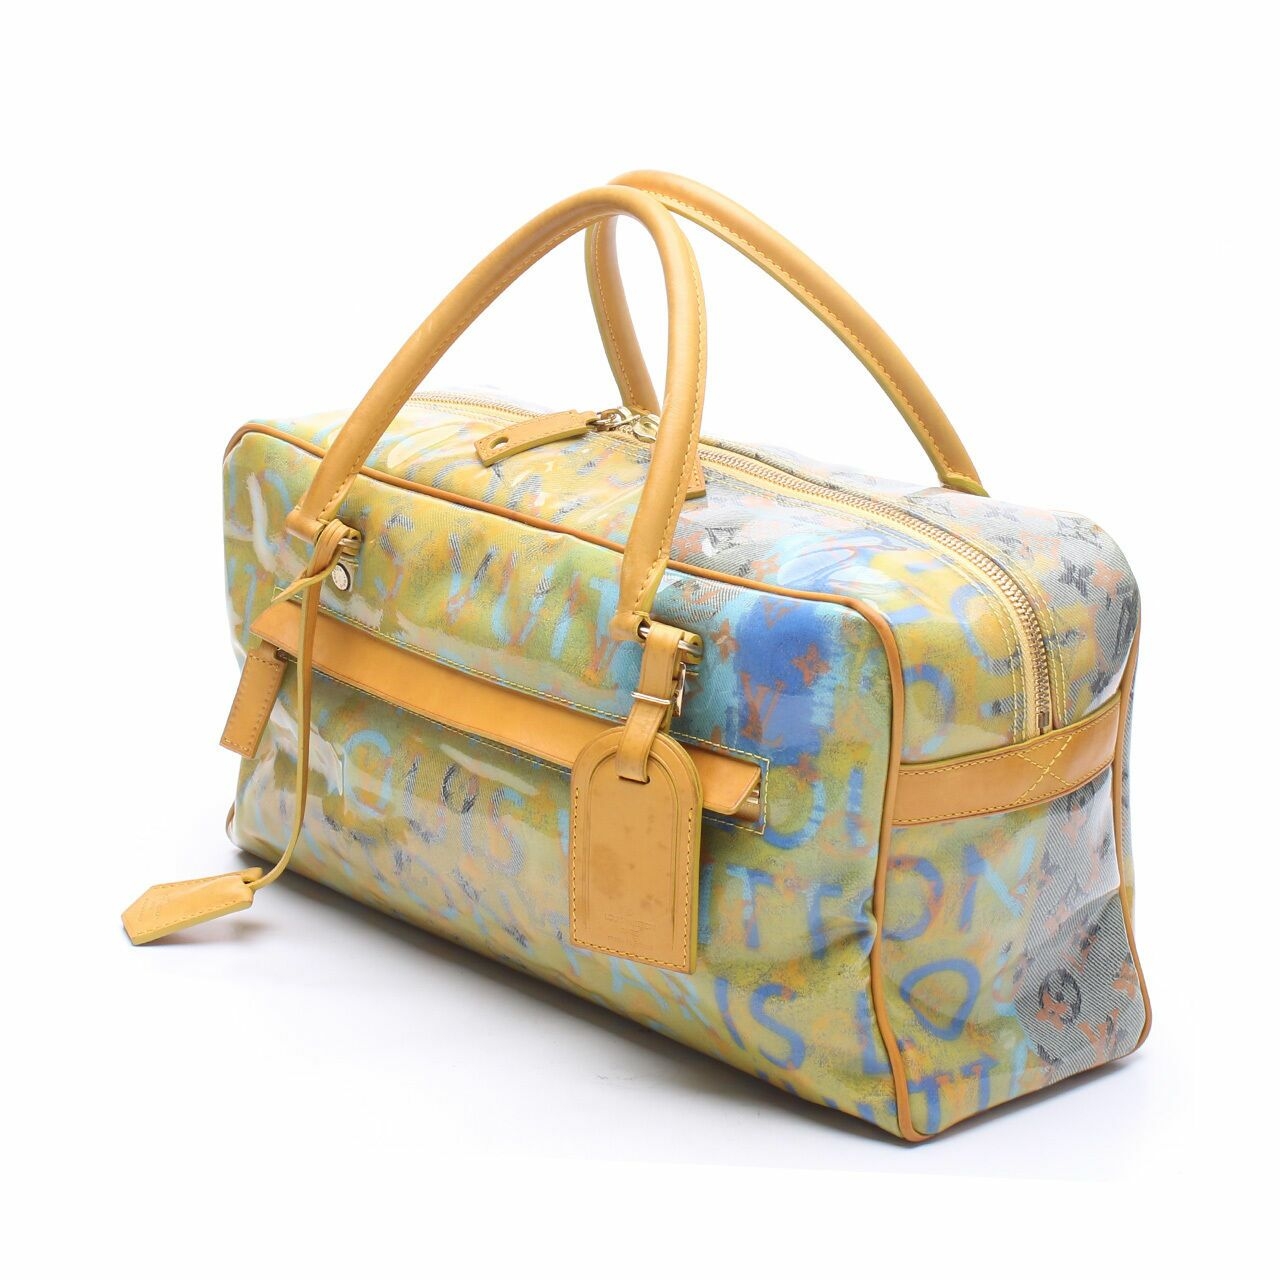 Louis Vuitton Richard Prince Jaune Defile Weekender Handbag